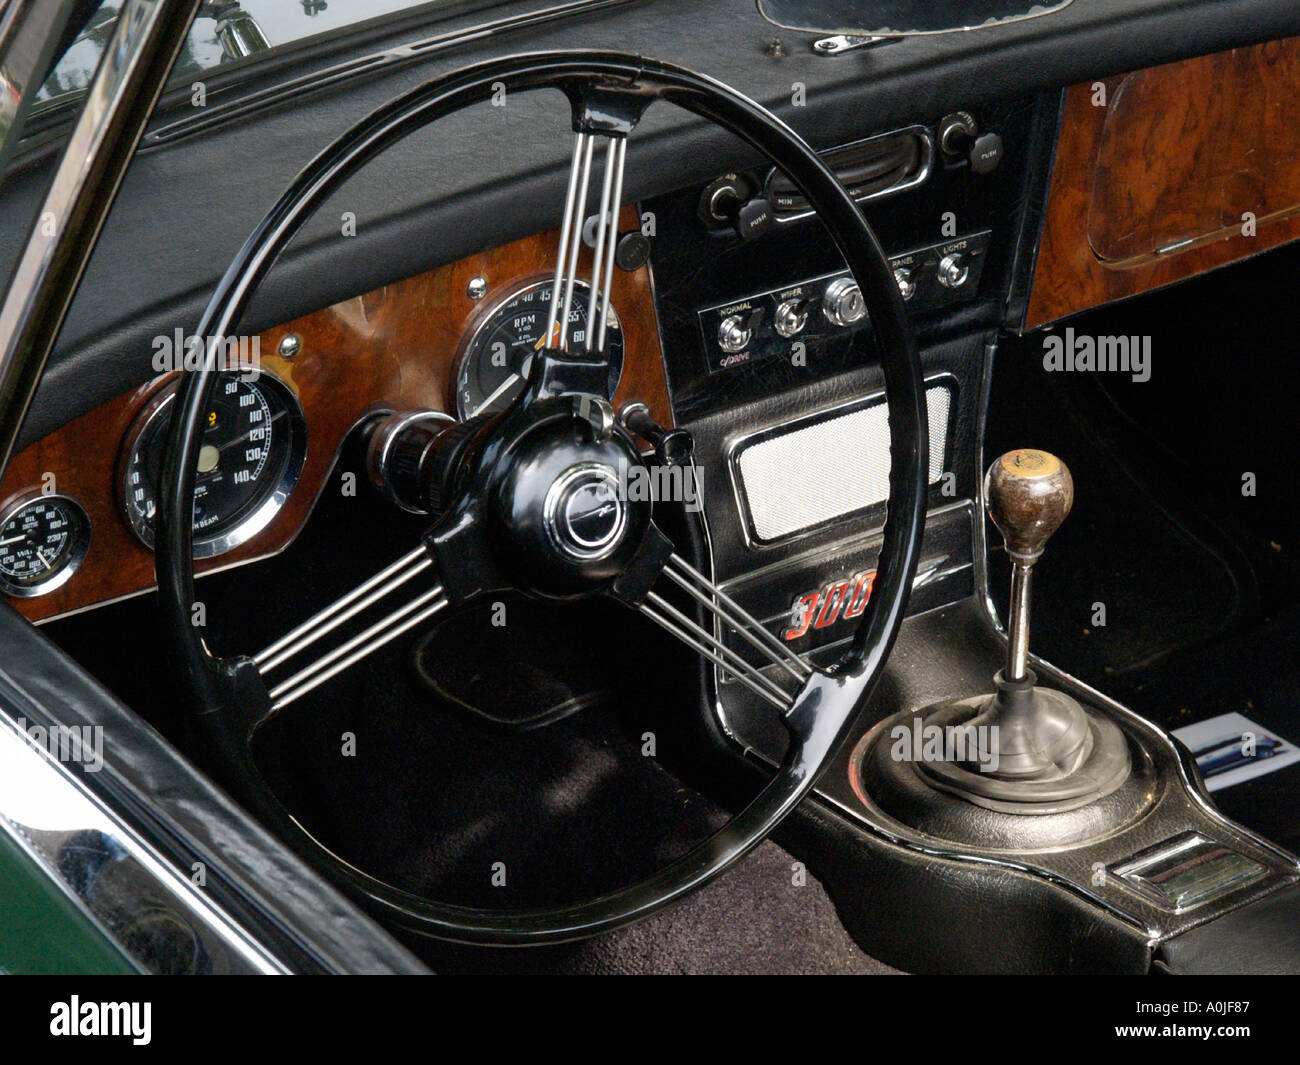 Innenraum eines Austin Healey 3000 mk3 klassischen Sportwagens mit gefederten Lenkrad und Armaturenbrett aus Holz Stockfoto